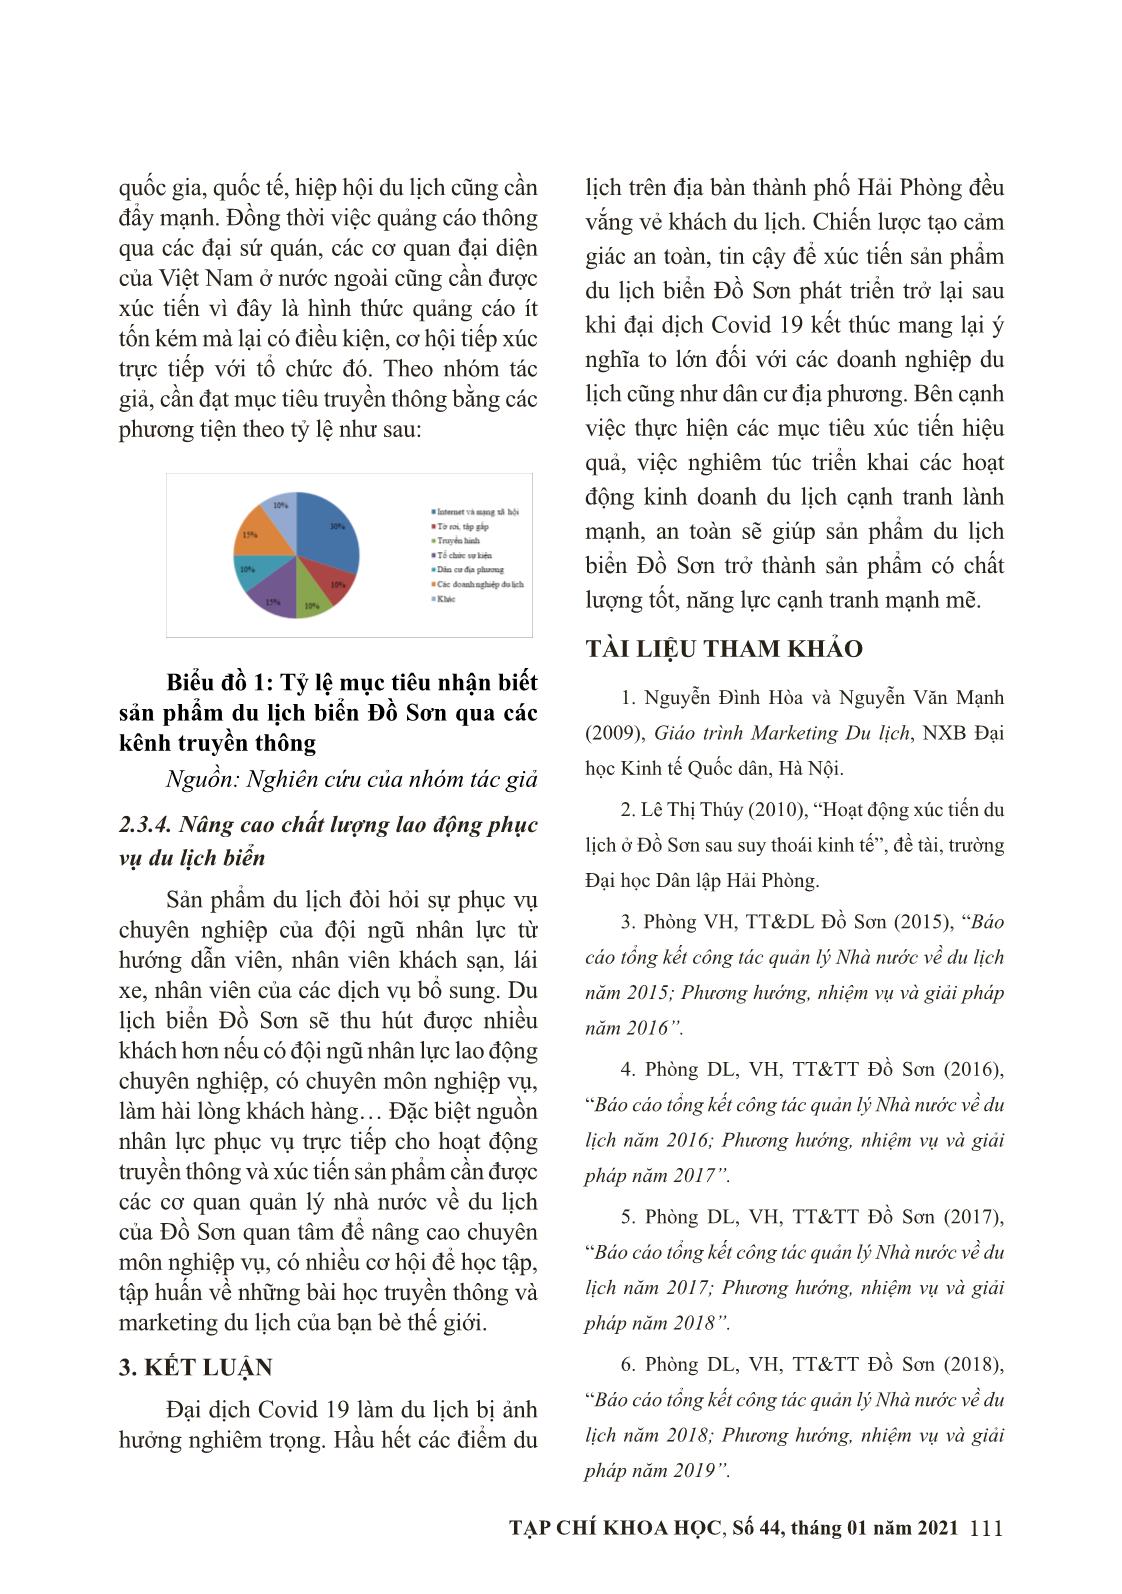 Chiến lược xúc tiến sản phẩm du lịch biển Đồ Sơn, Hải Phòng sau đại dịch Covid19 trang 8